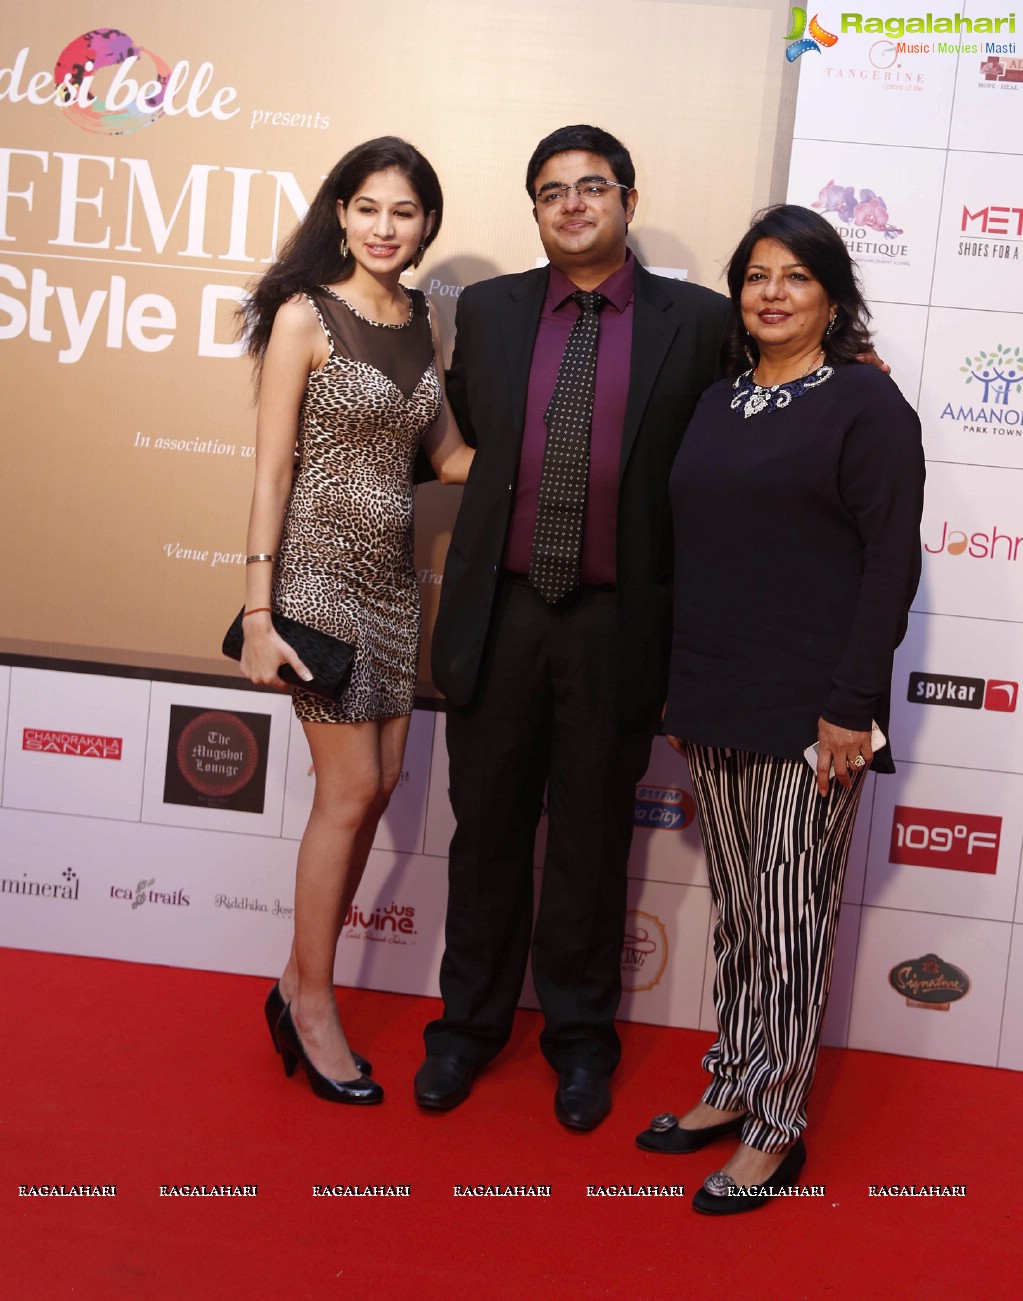 Femina Style Diva 2014 Curtain Raiser at Hyatt in Pune